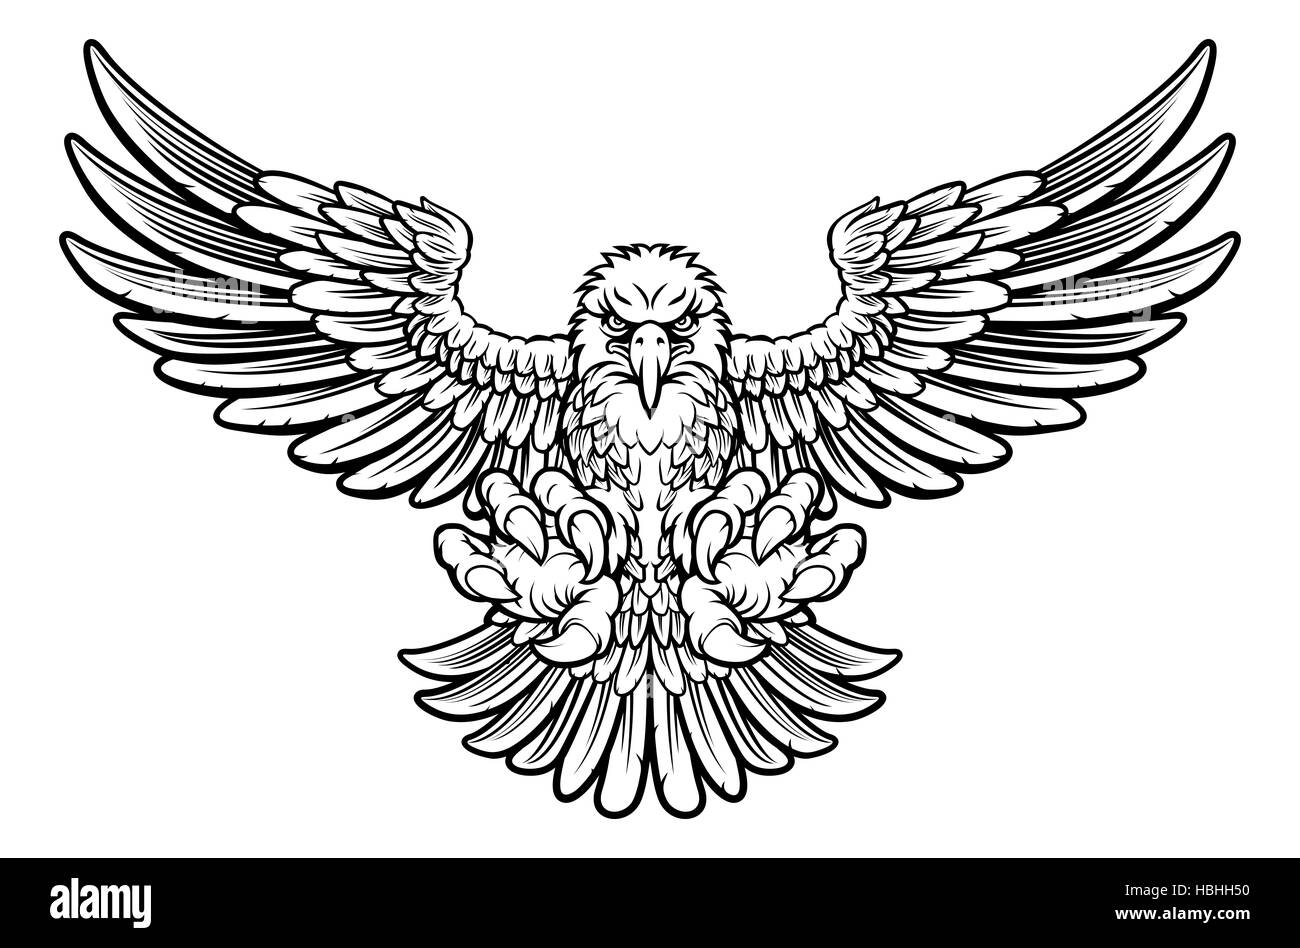 Holzschnitt-Stil Weißkopfseeadler Maskottchen Sturzflug mit Talon Krallen nach vorne und Flügel ausbreiten Stockfoto